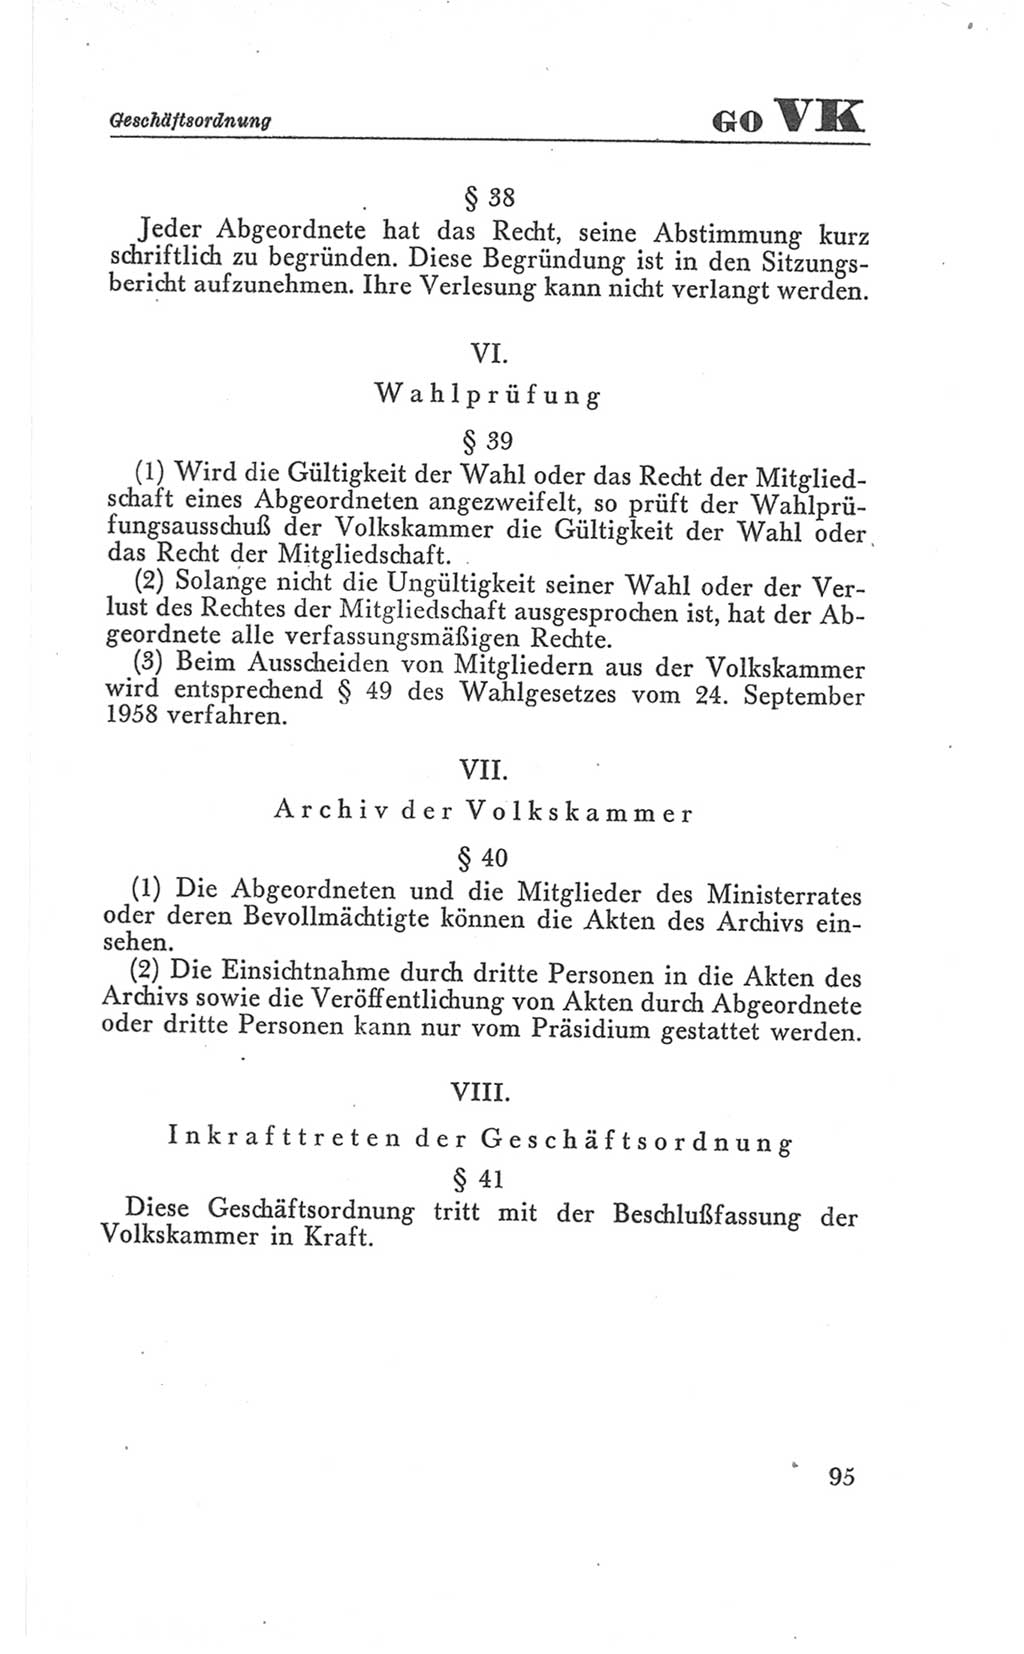 Handbuch der Volkskammer (VK) der Deutschen Demokratischen Republik (DDR), 3. Wahlperiode 1958-1963, Seite 95 (Hdb. VK. DDR 3. WP. 1958-1963, S. 95)